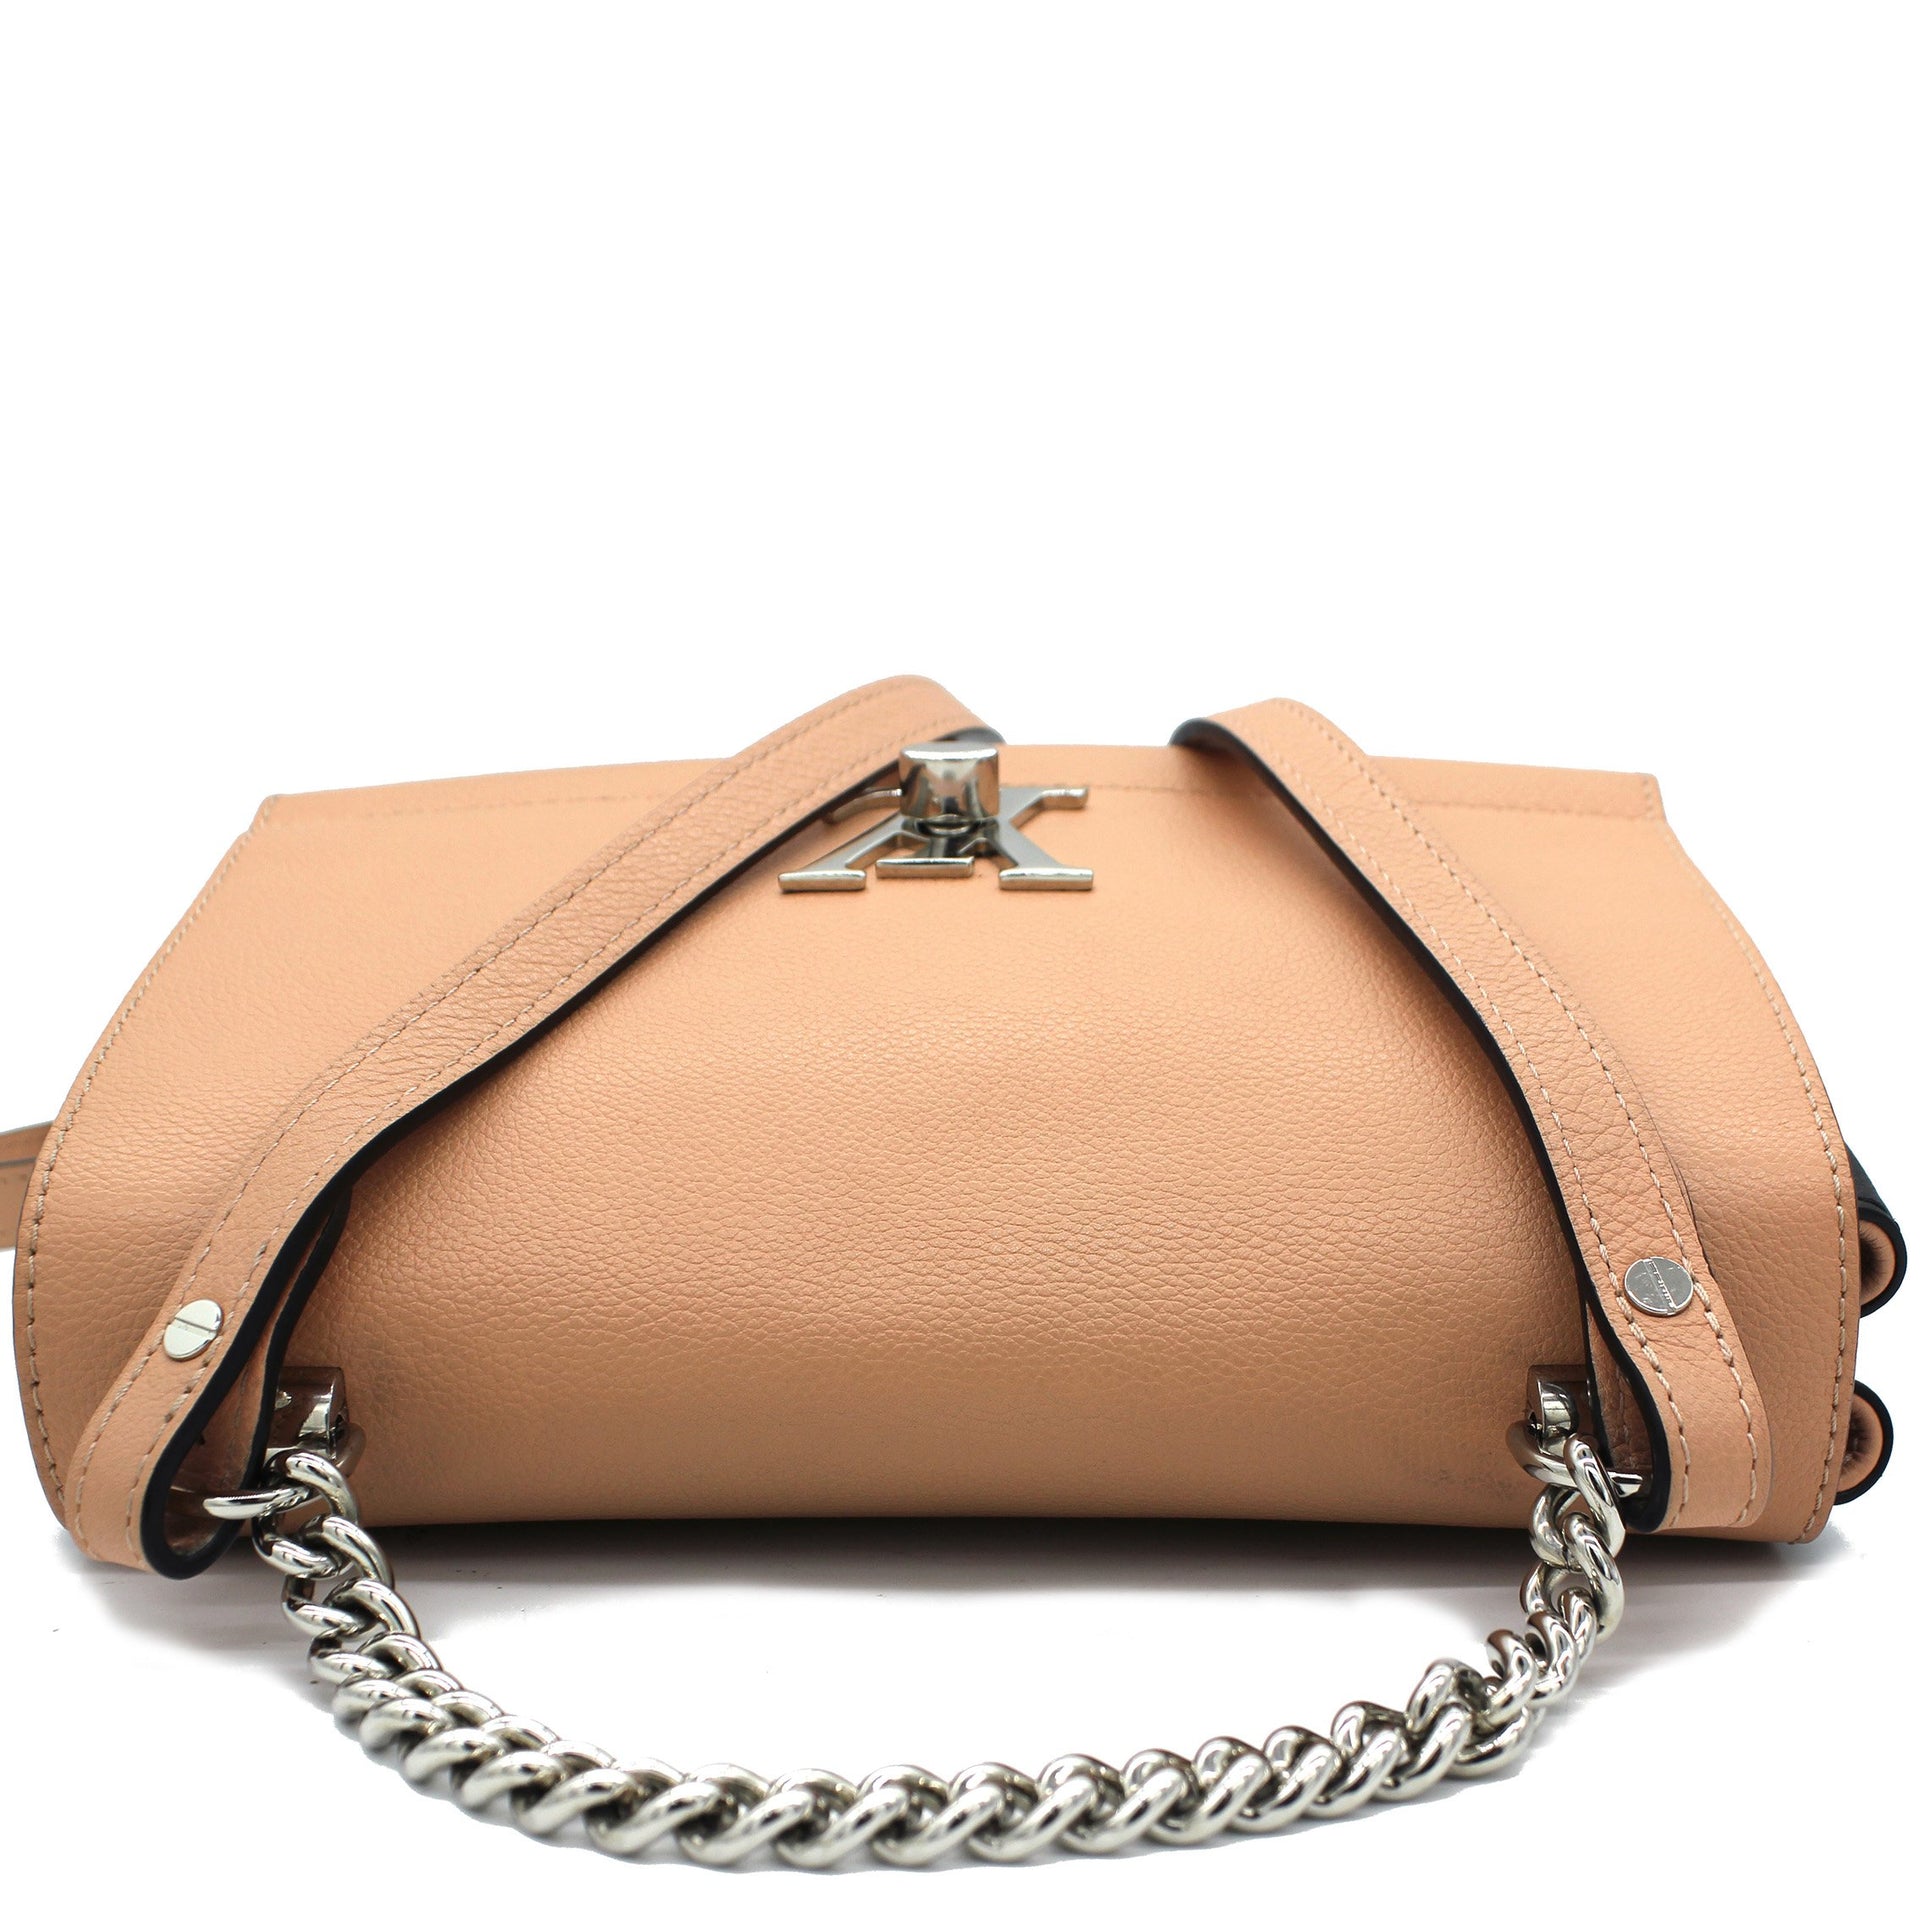 Lockme II BB Leather Handbag